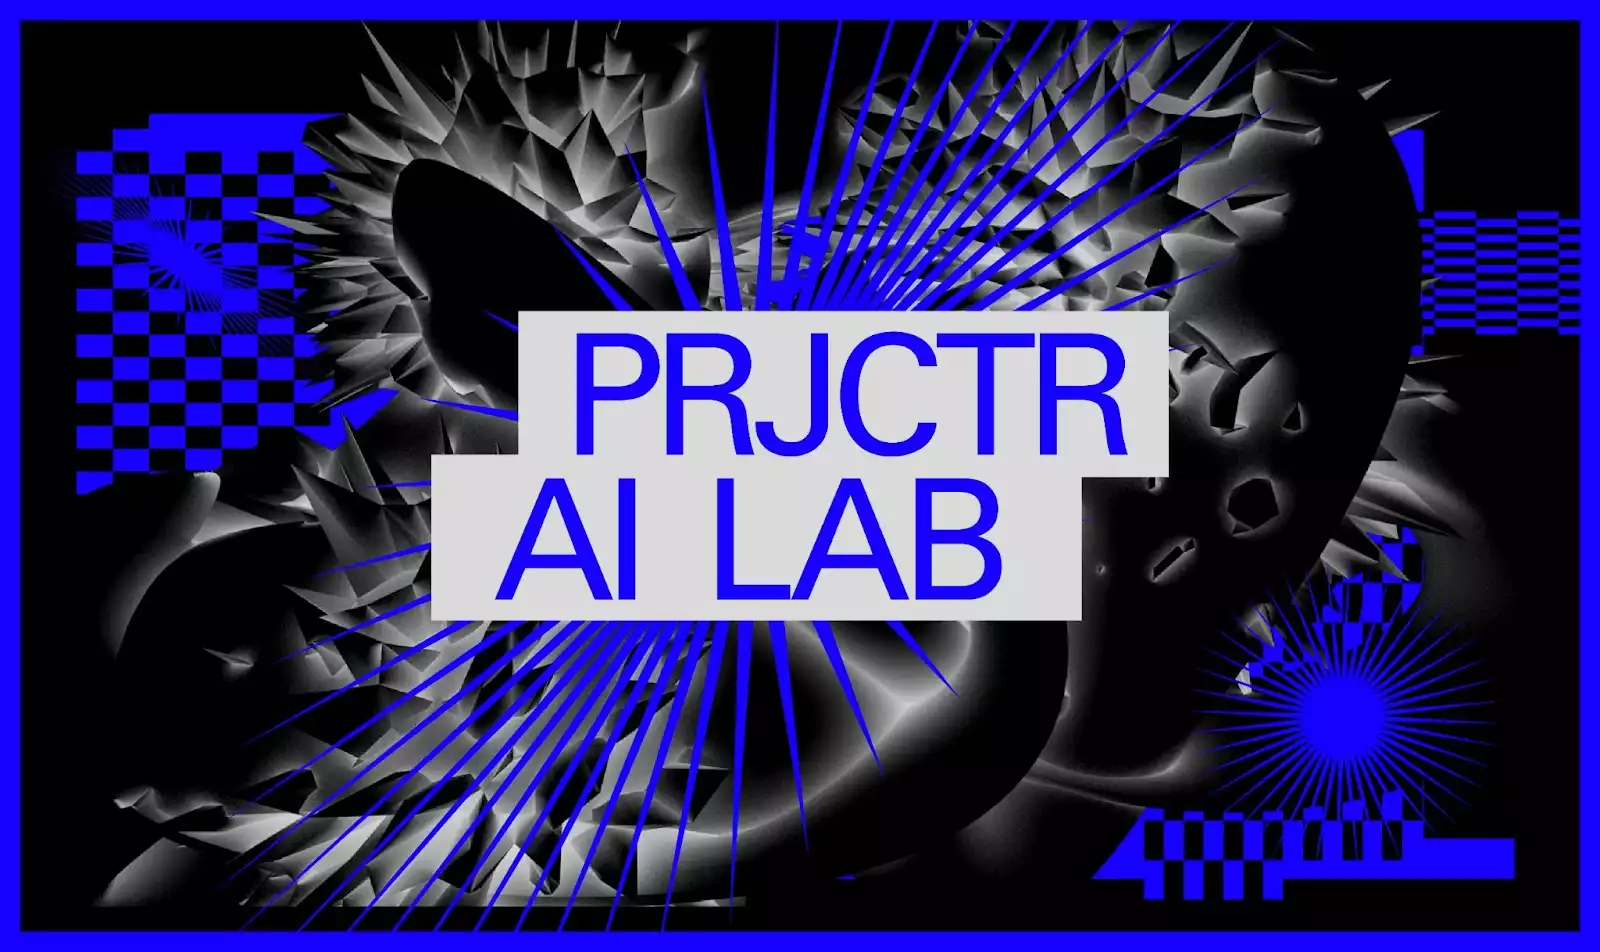 Projector створює освітню лабораторію на основі штучного інтелекту